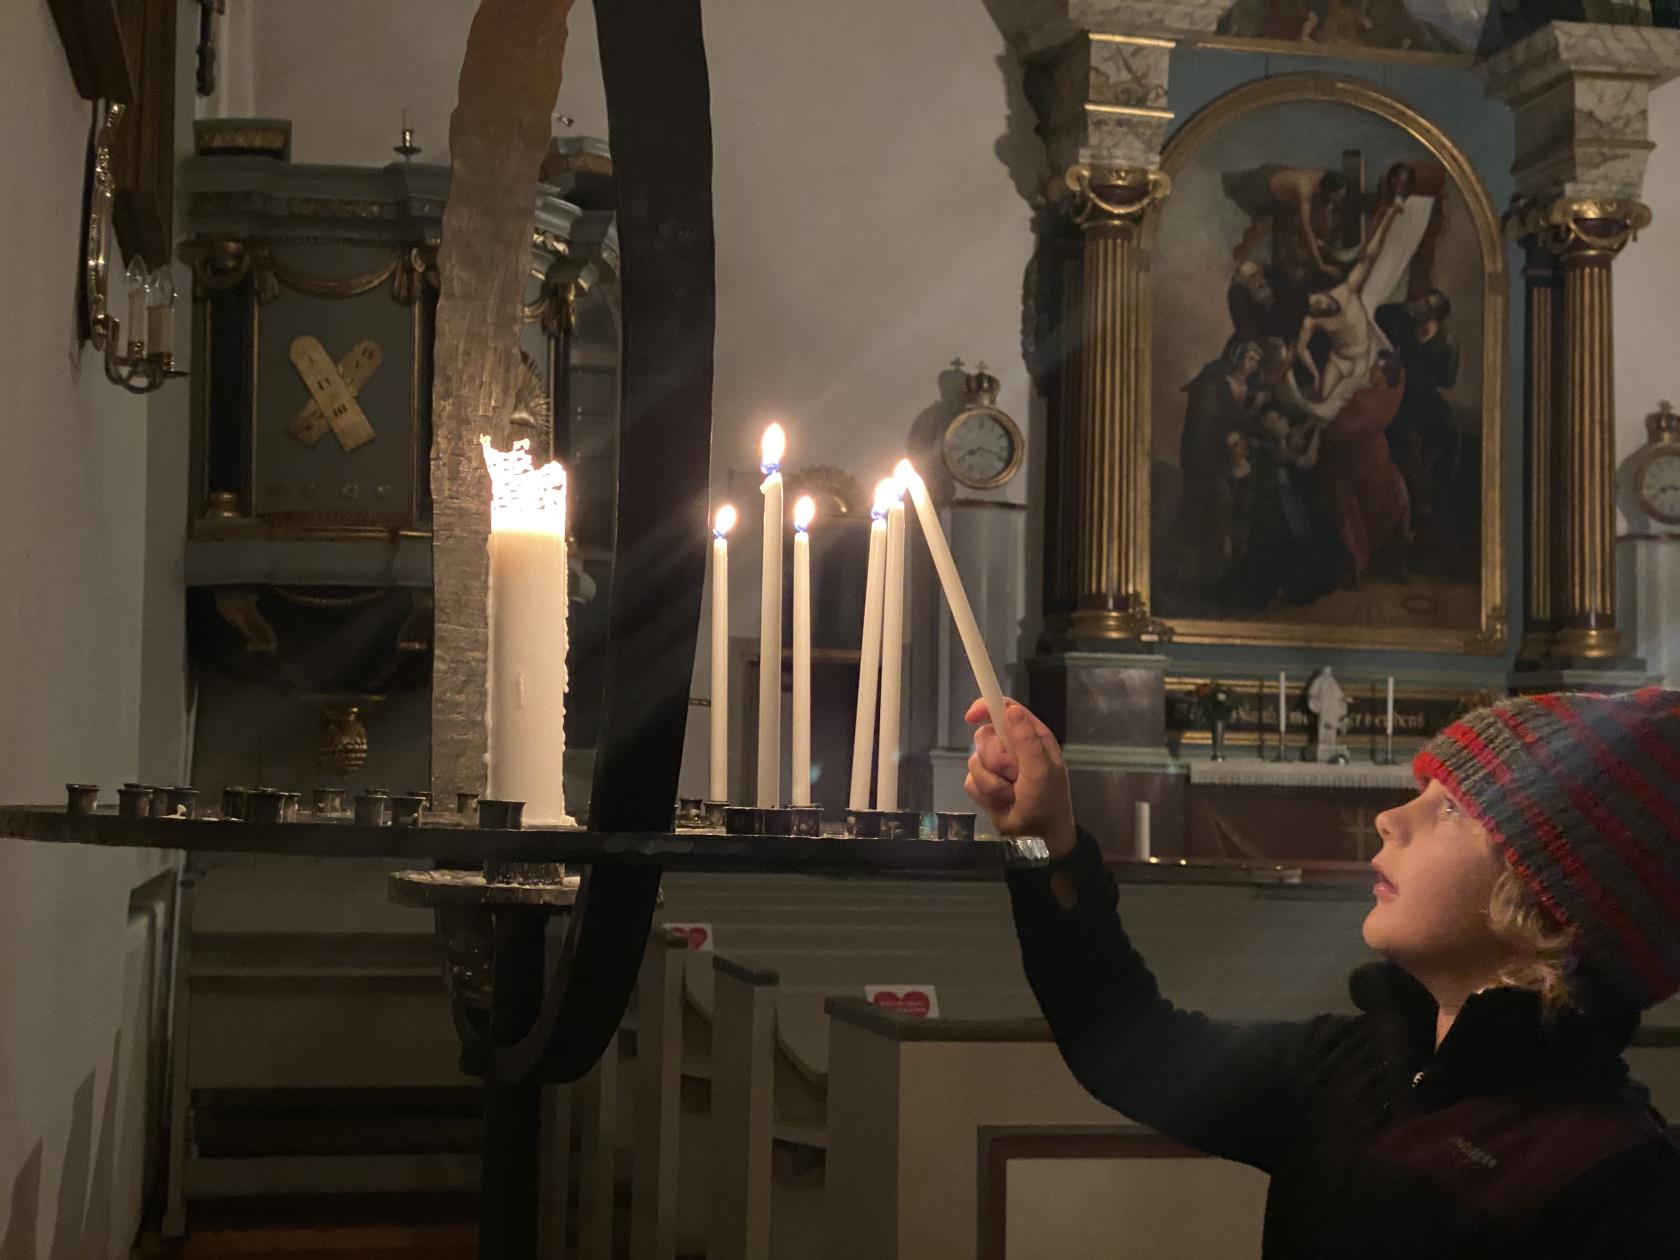 En pojke tänder ett ljus i en ljusbärare i en kyrka